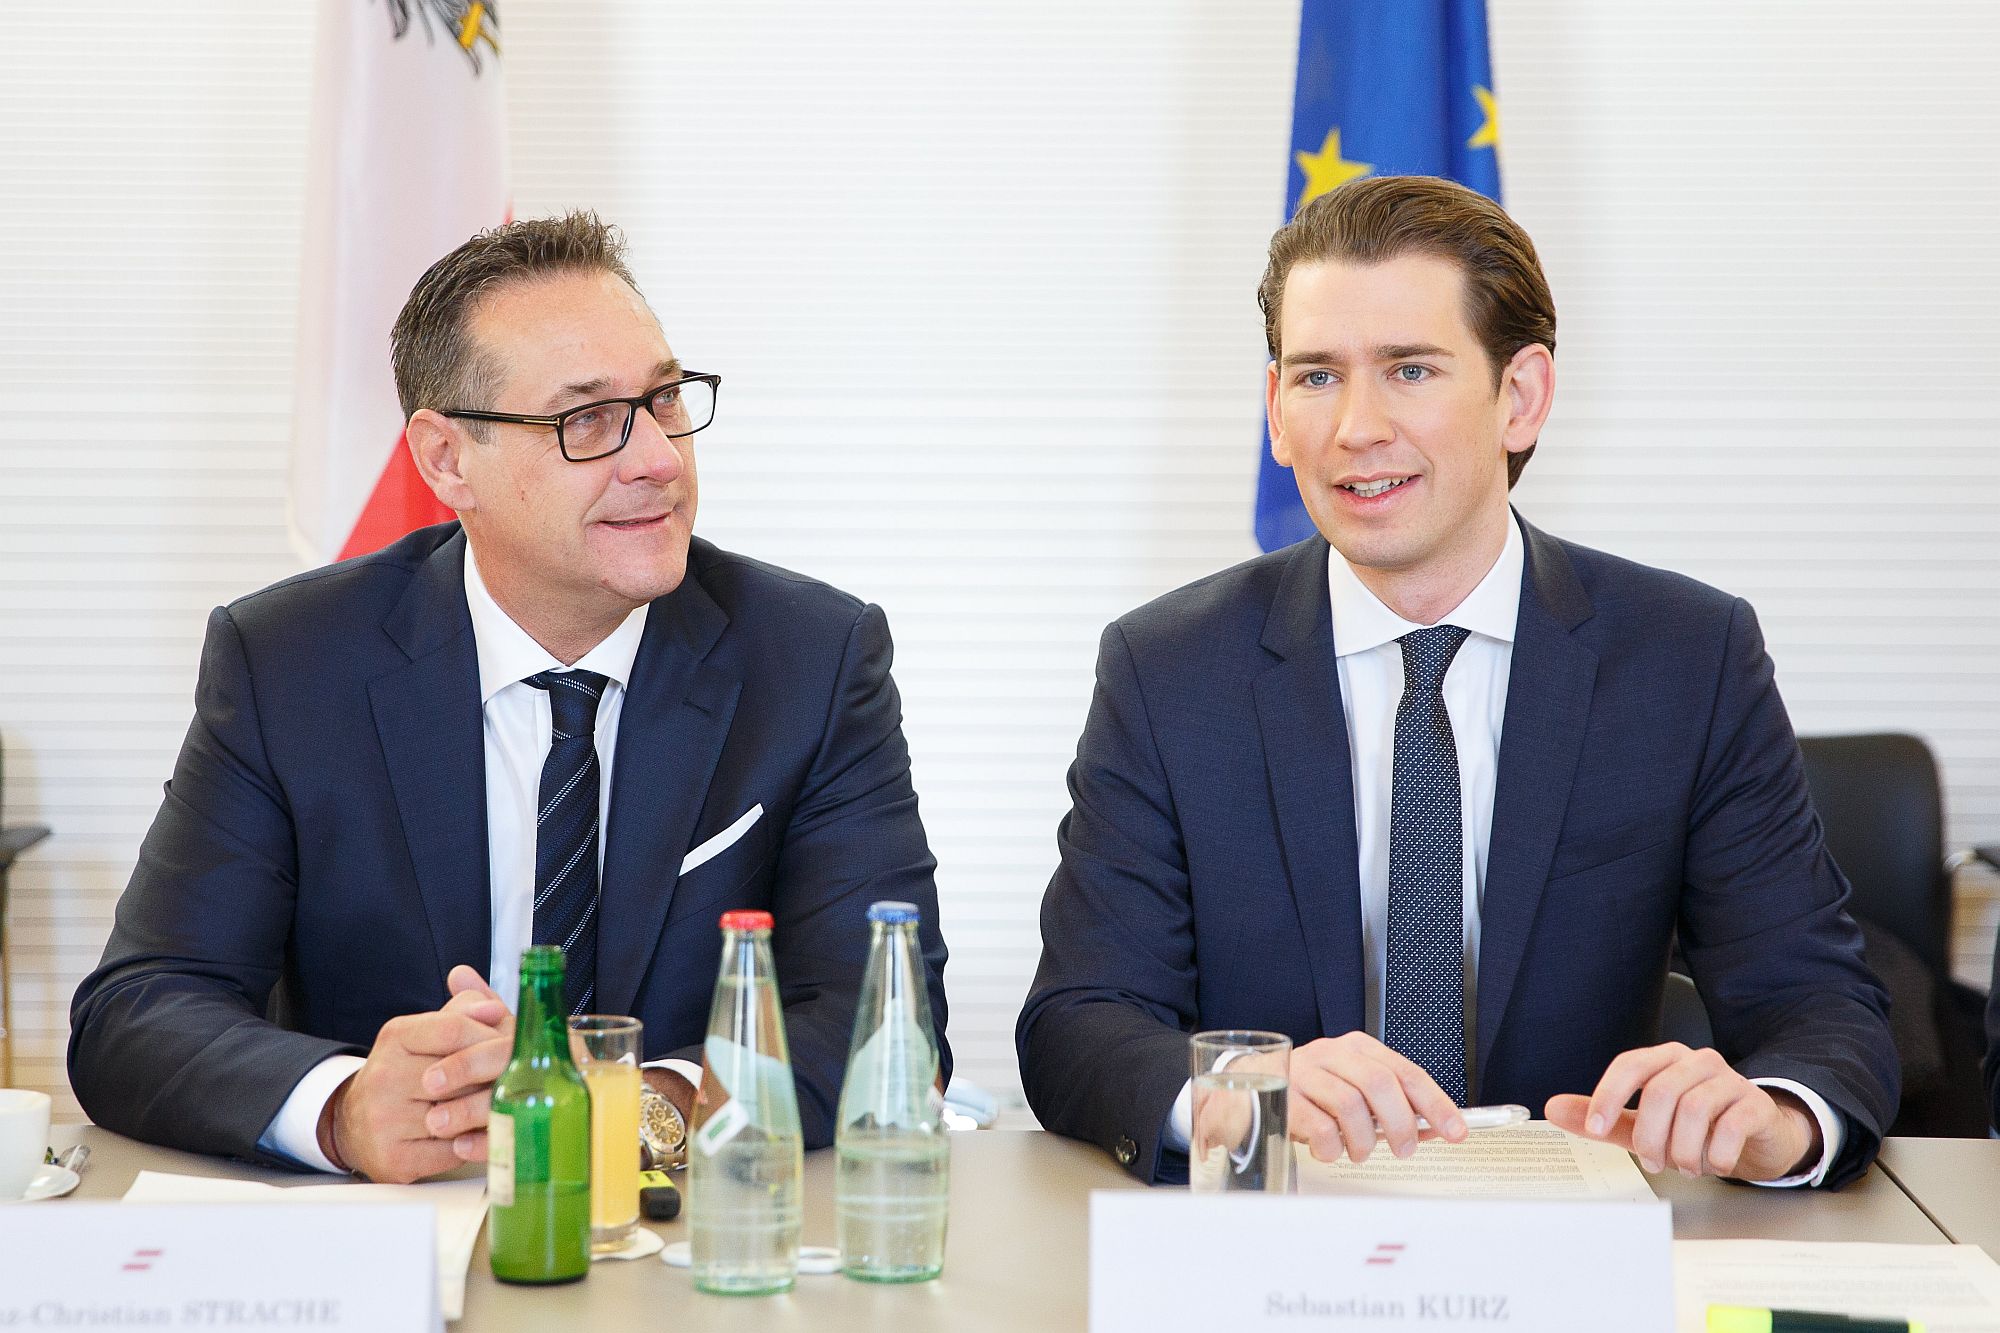 Heinz-Christian Strache és Sebastian Kurz a Leibnitzben megtartott kormányülés előtt 2018. január 5-én. EPA/FLORIAN WIESER